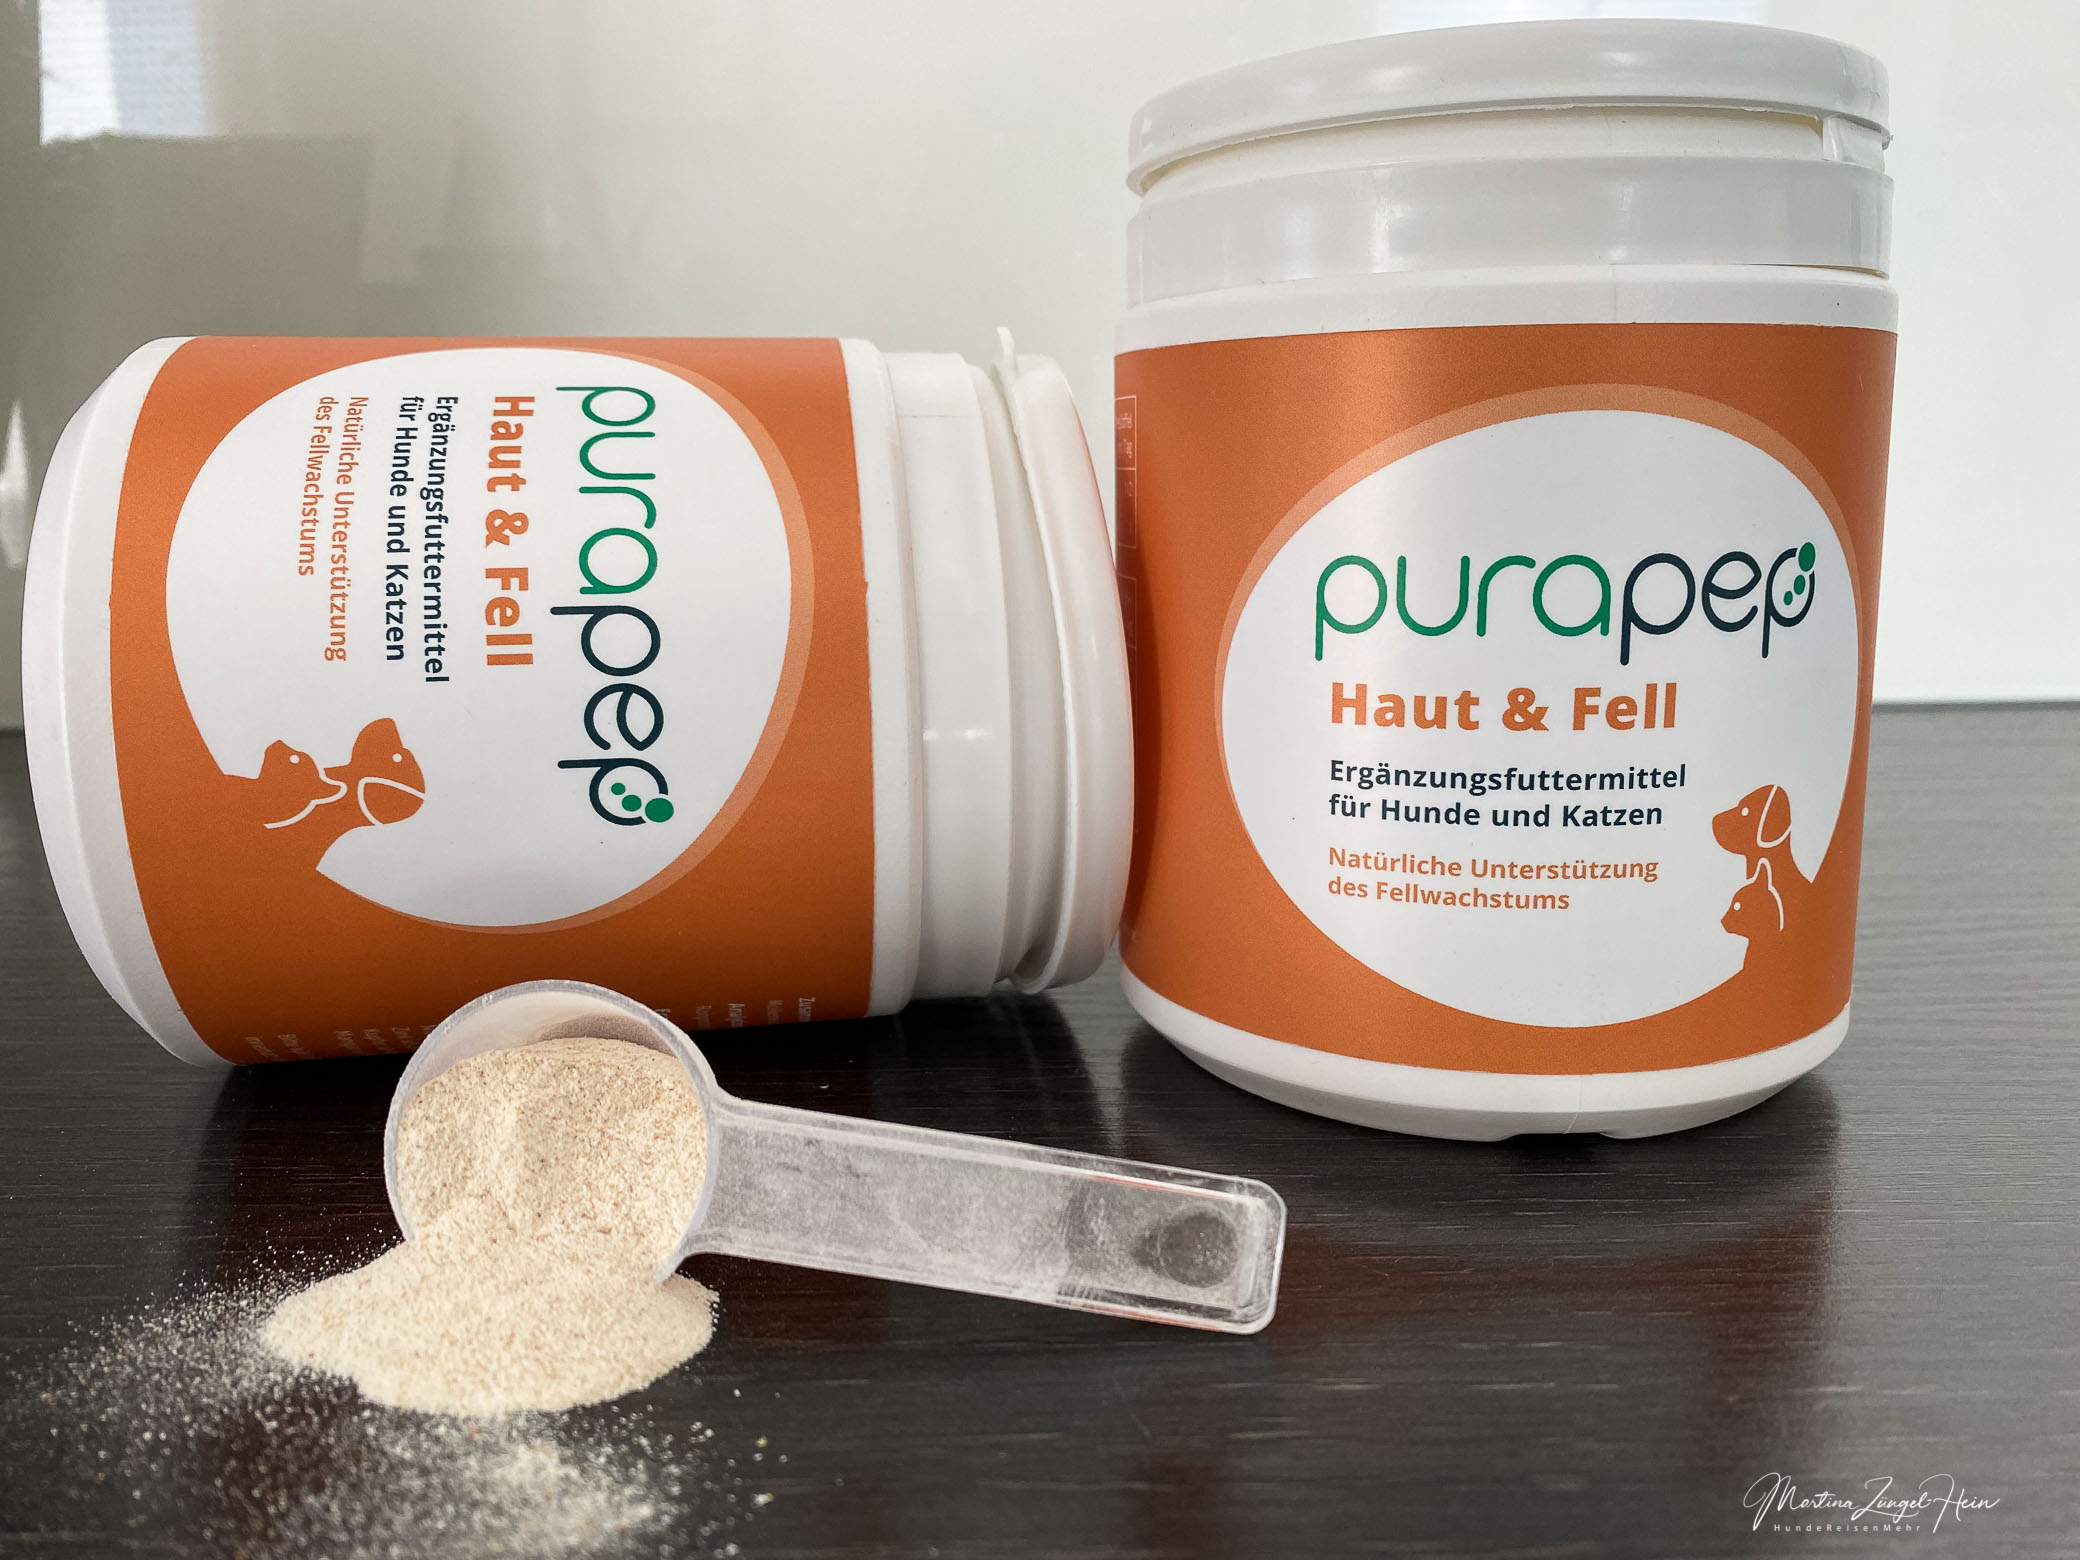 purapep Haut & Fell ist eine Futterergänzung mit wertvollen Inhaltsstoffen